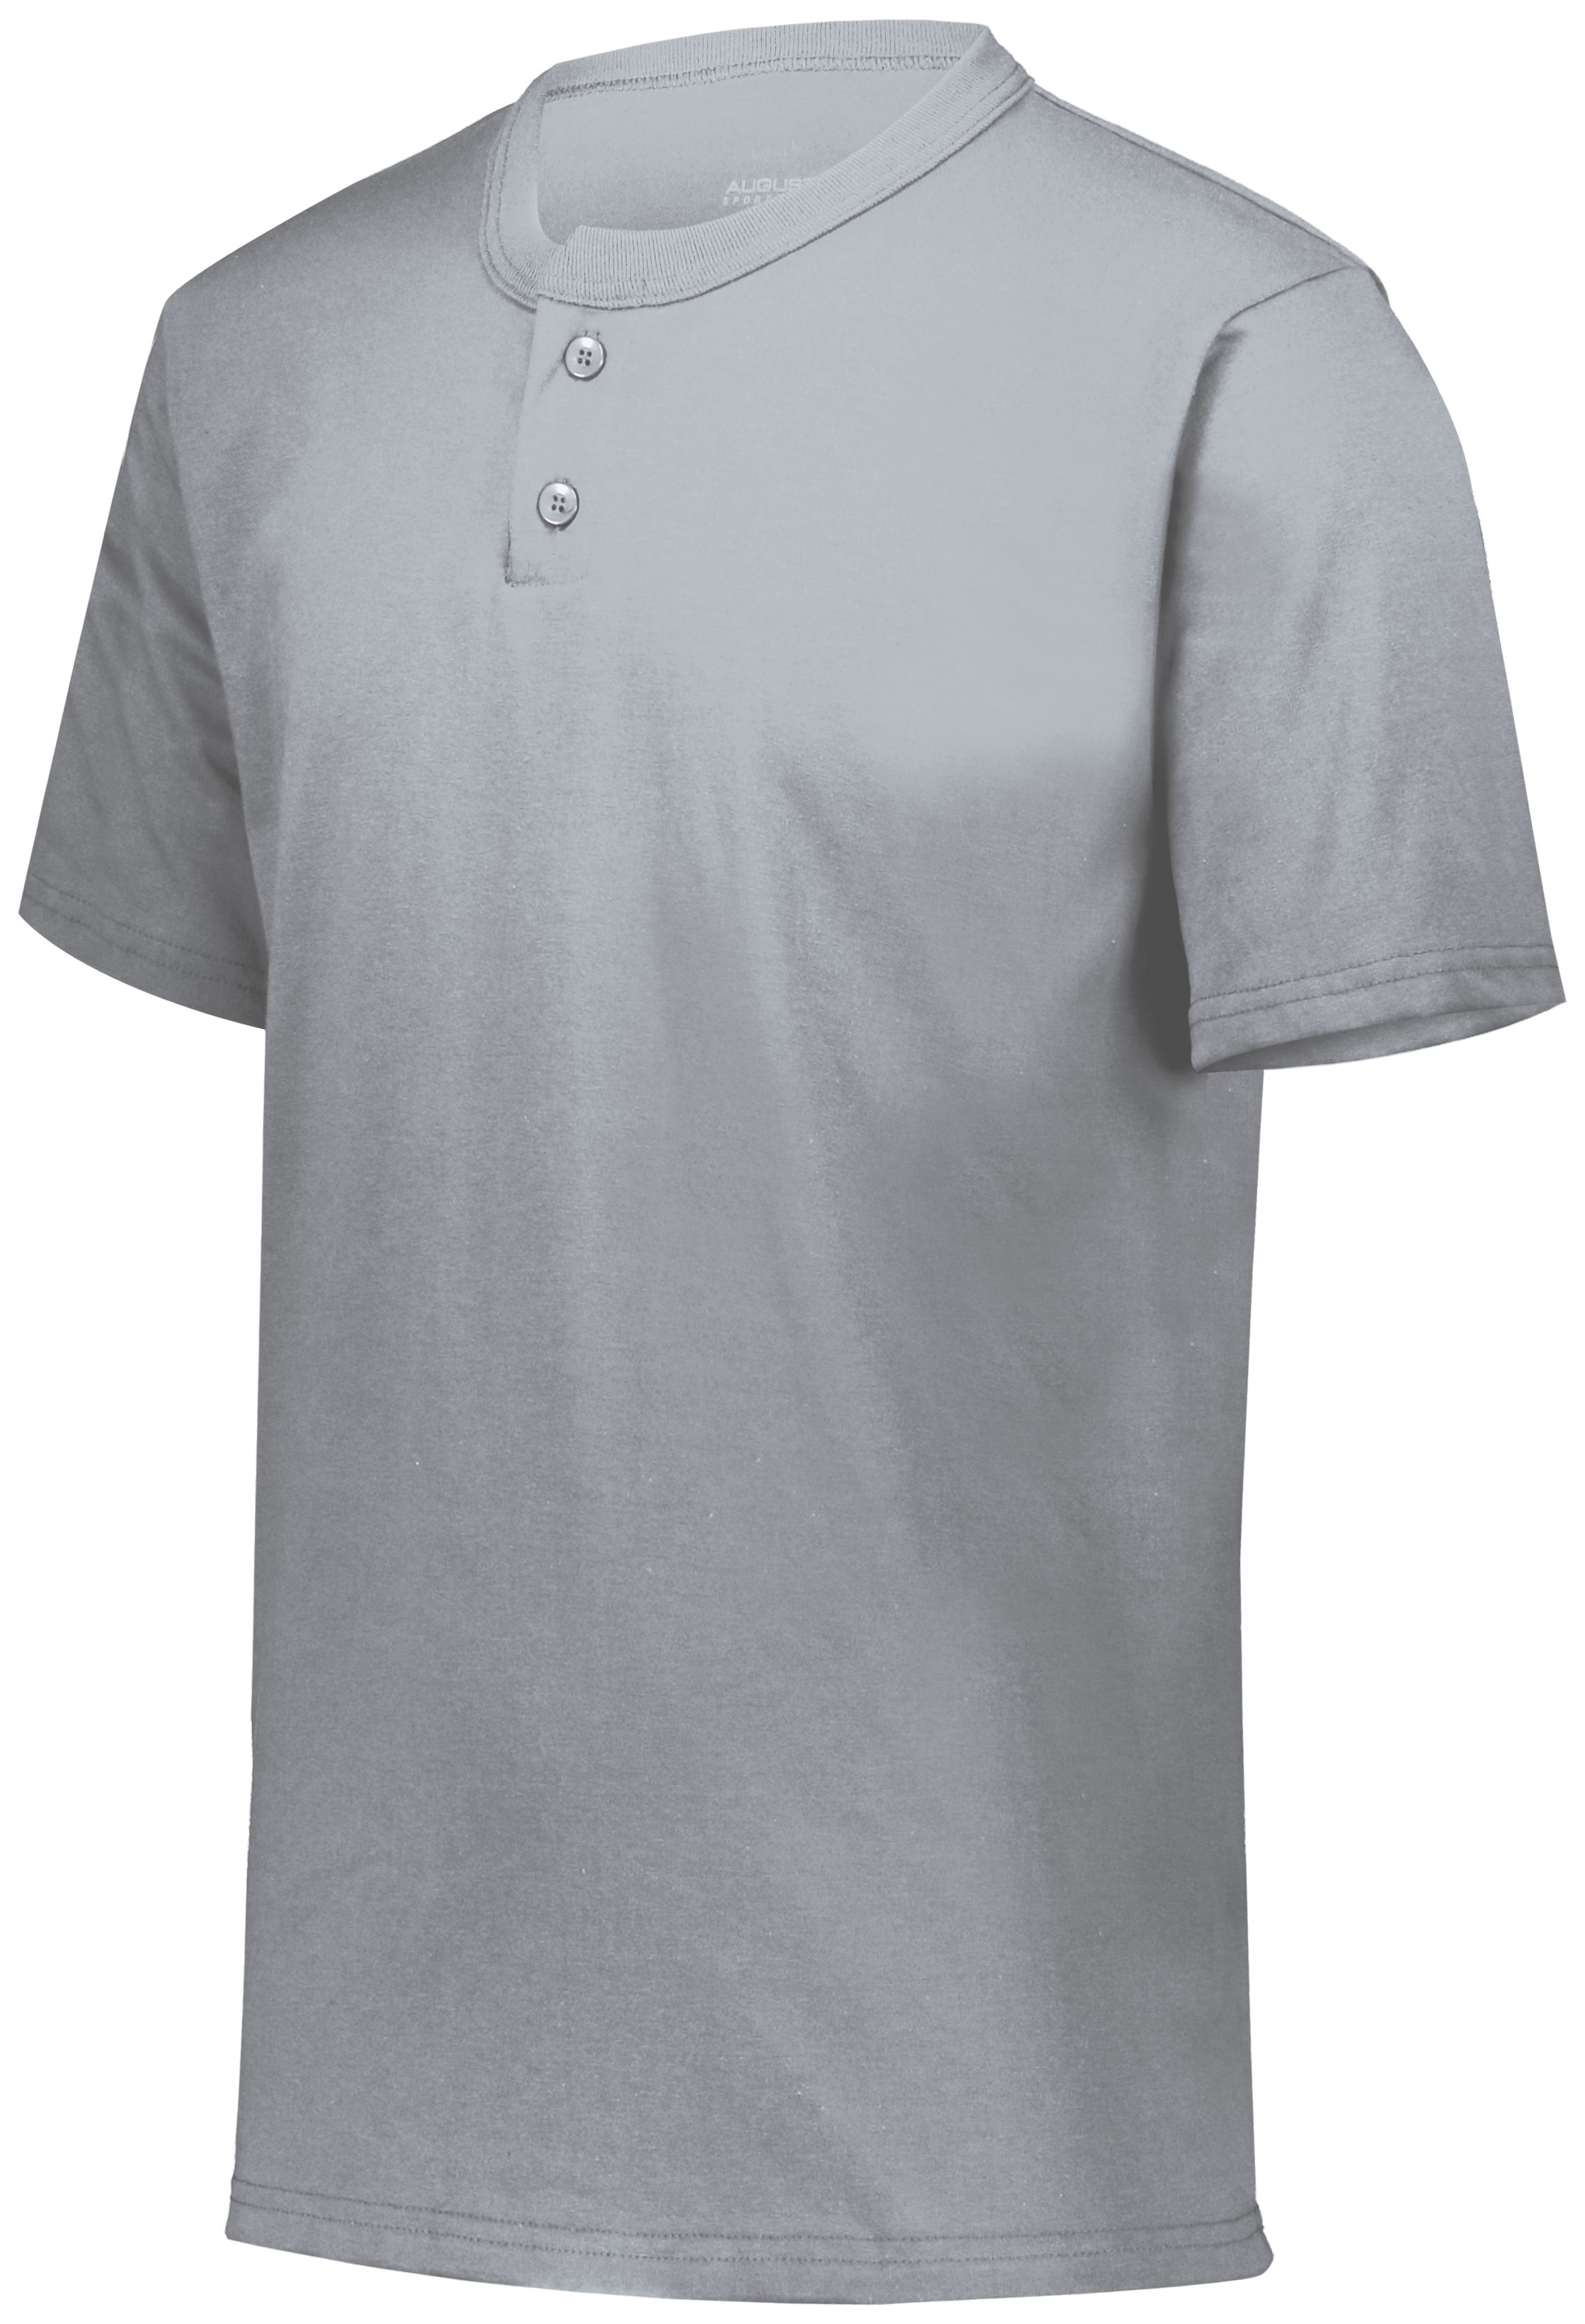 2 Button Baseball Jersey - Compound Sportswear